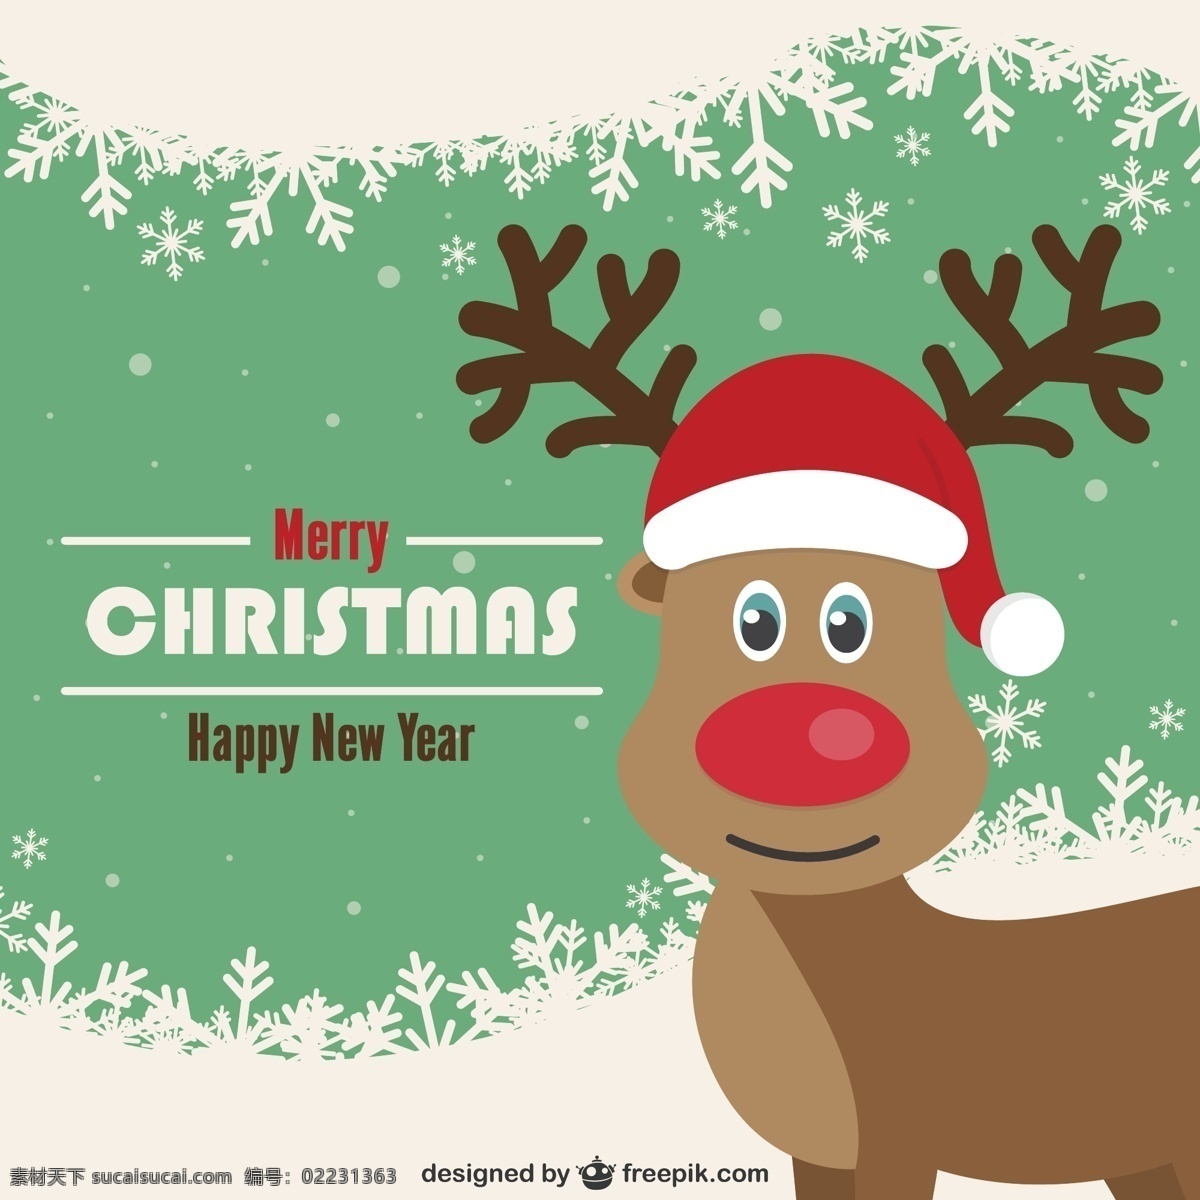 复古 圣诞贺卡 驯鹿 背景 圣诞节 葡萄酒 快乐 新一年 快活 圣诞 新建 新年 卡片 圣诞快乐